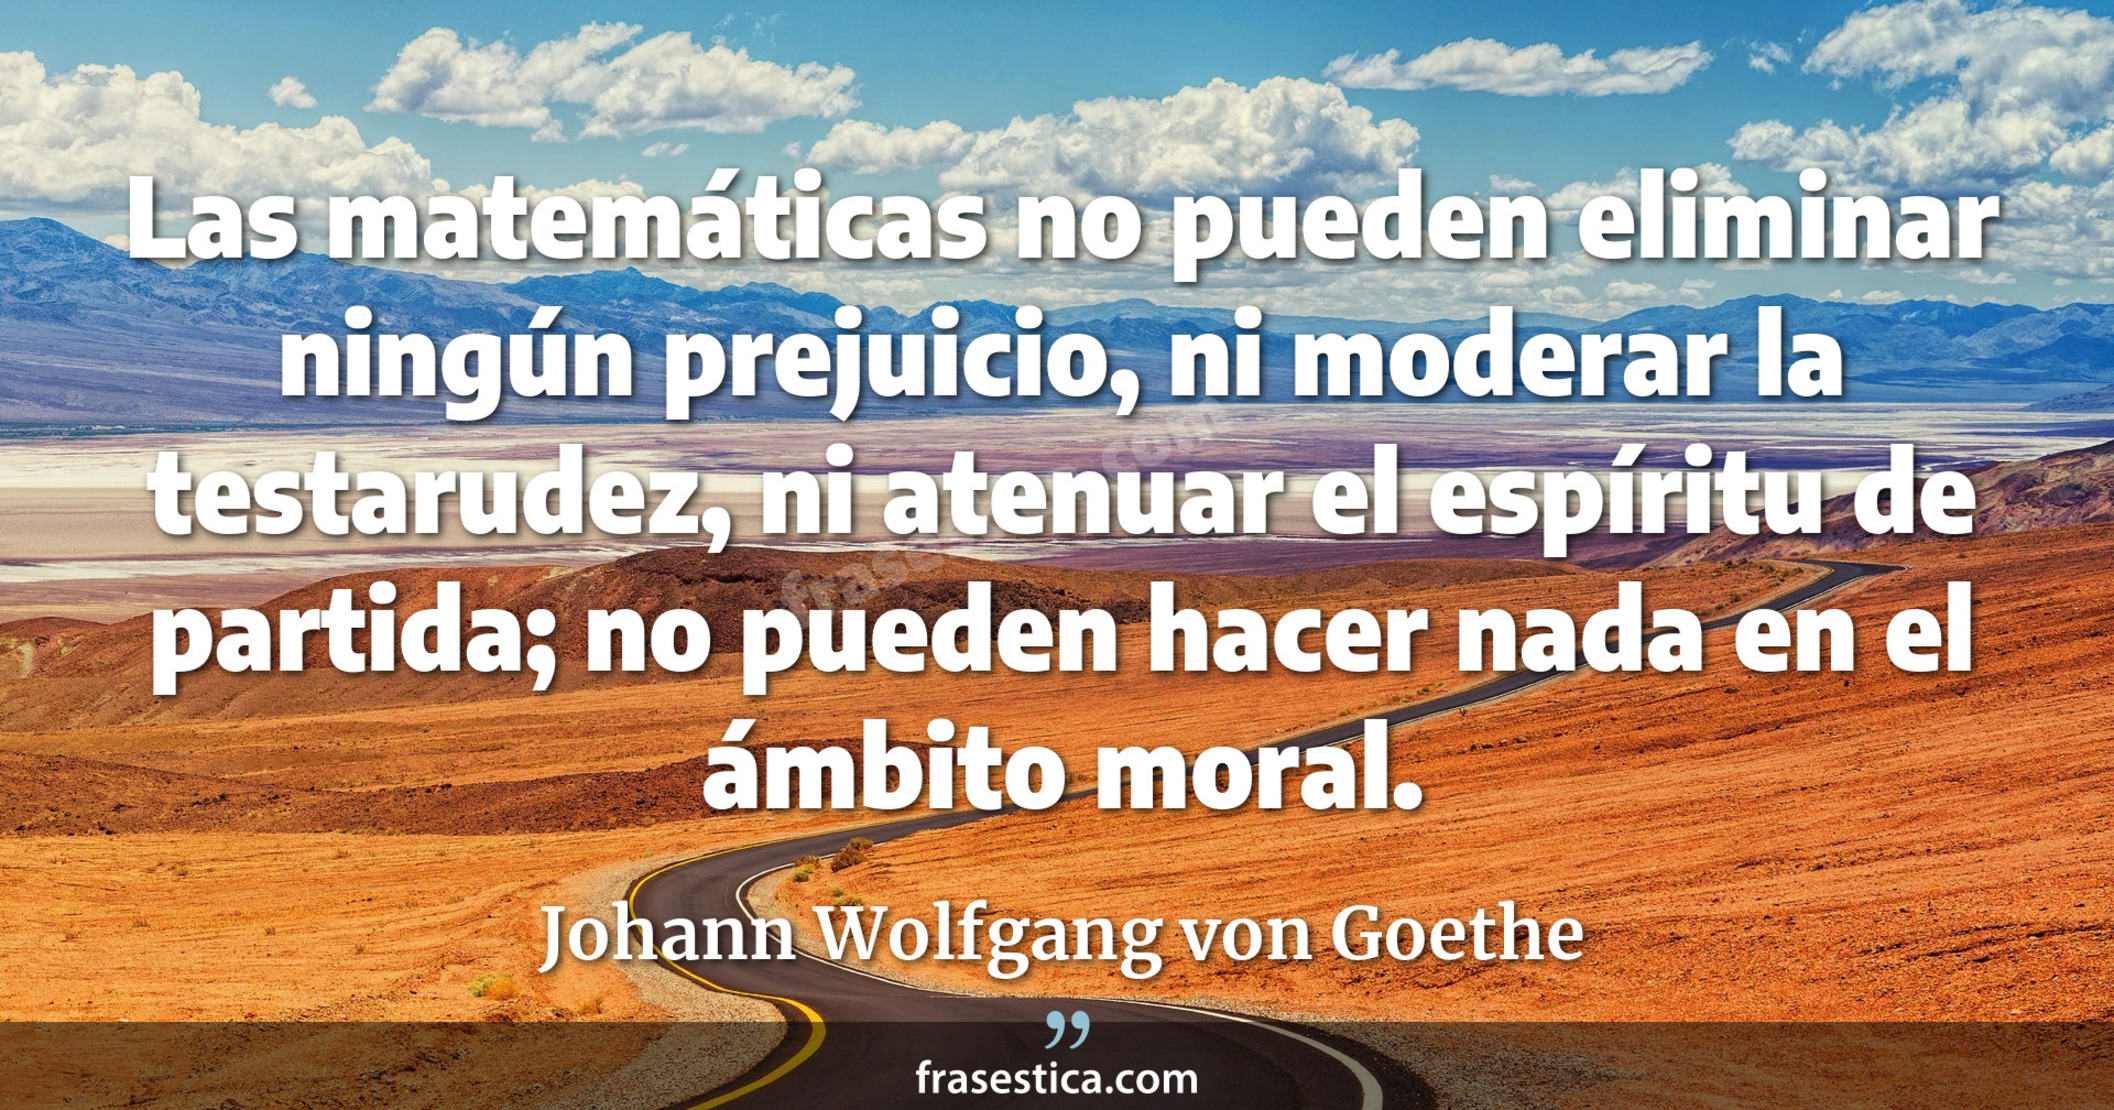 Las matemáticas no pueden eliminar ningún prejuicio, ni moderar la testarudez, ni atenuar el espíritu de partida; no pueden hacer nada en el ámbito moral. - Johann Wolfgang von Goethe